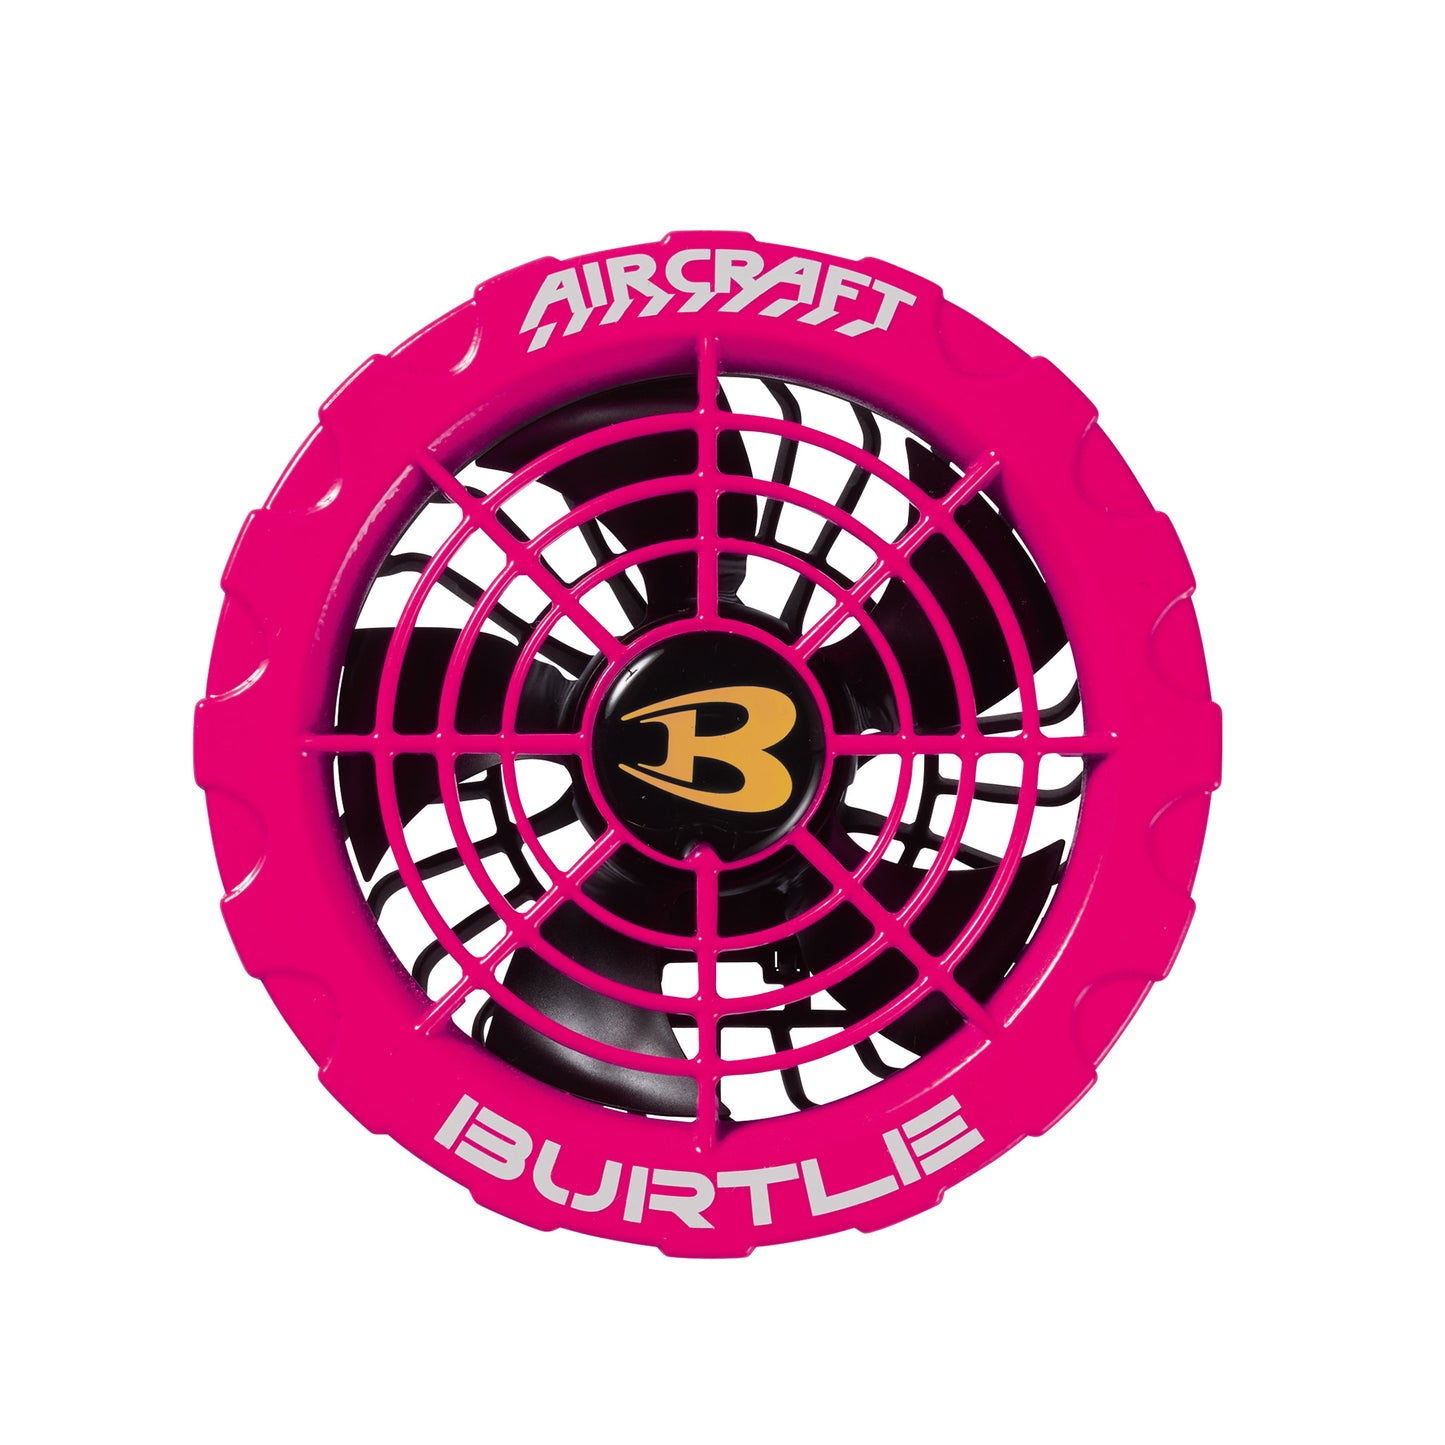 BURTLE【バートル】エアークラフト ファンユニット AC370/AC371-AC371